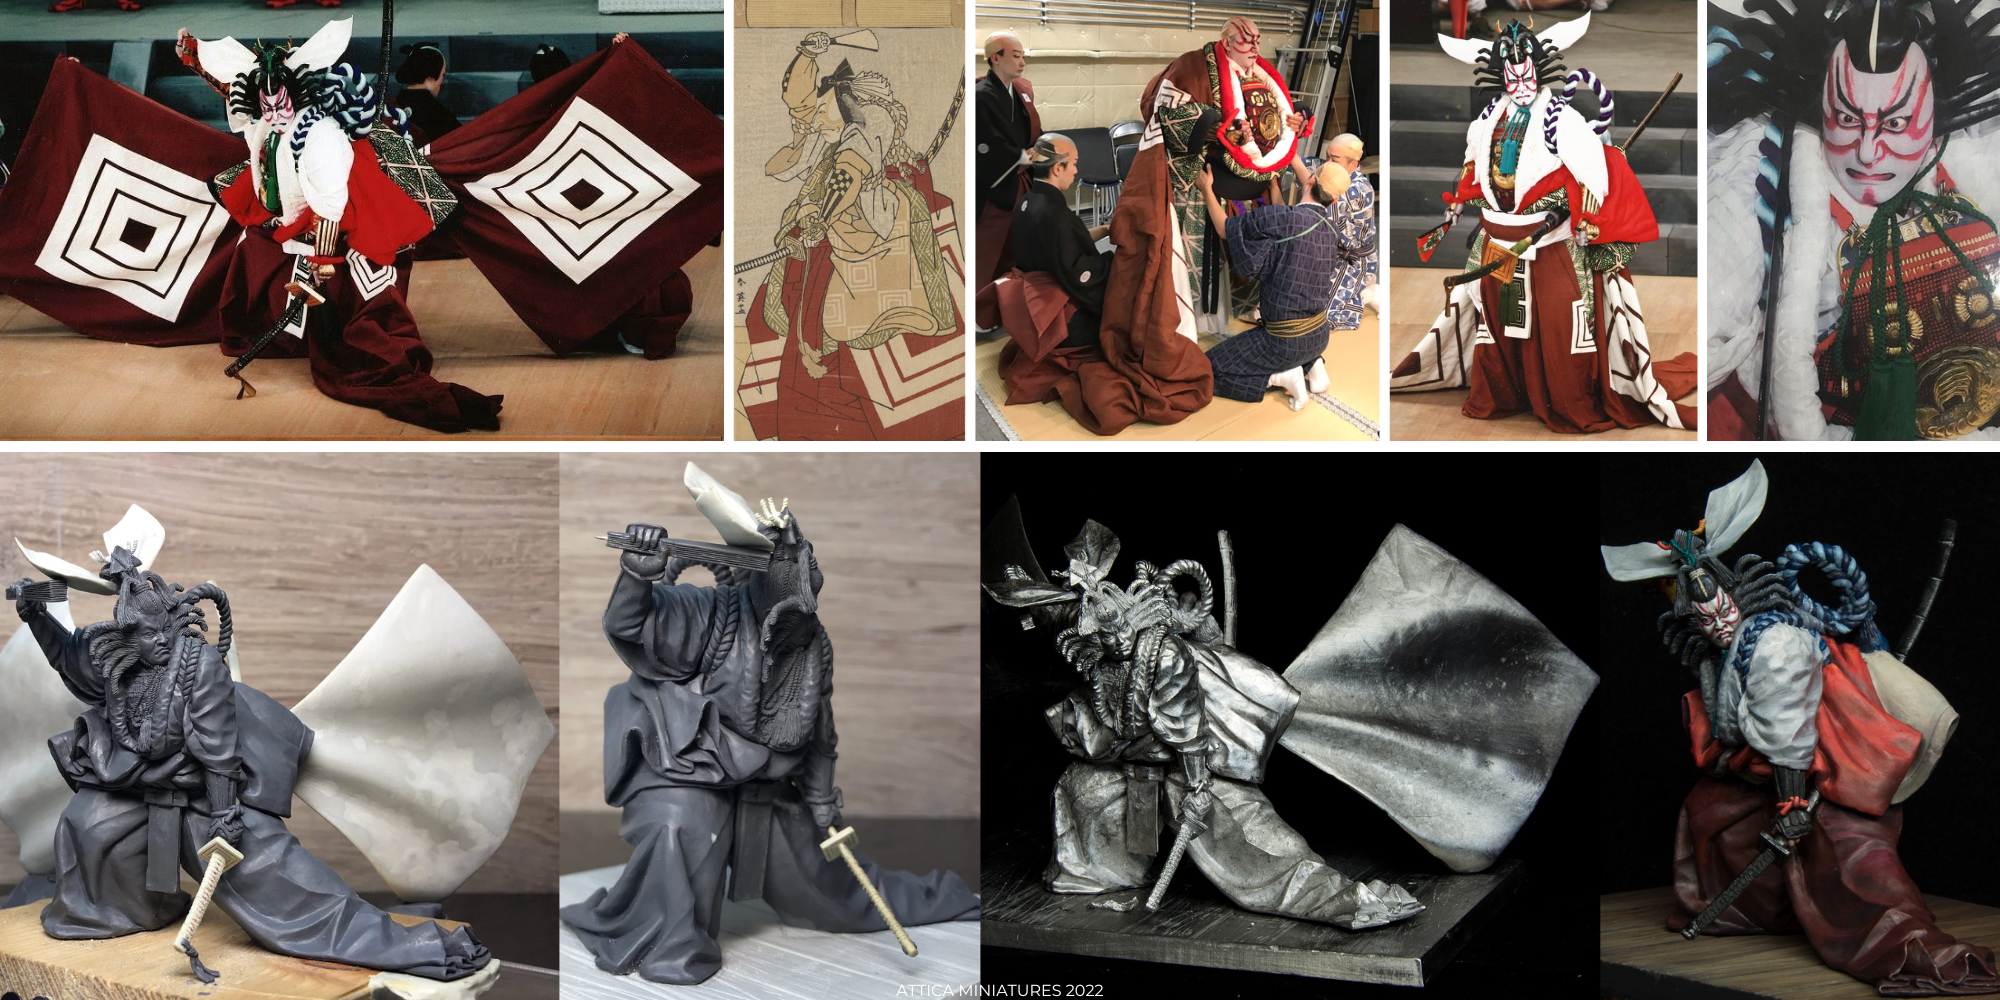 images/kabuki/attica-miniatures-kabuki.png